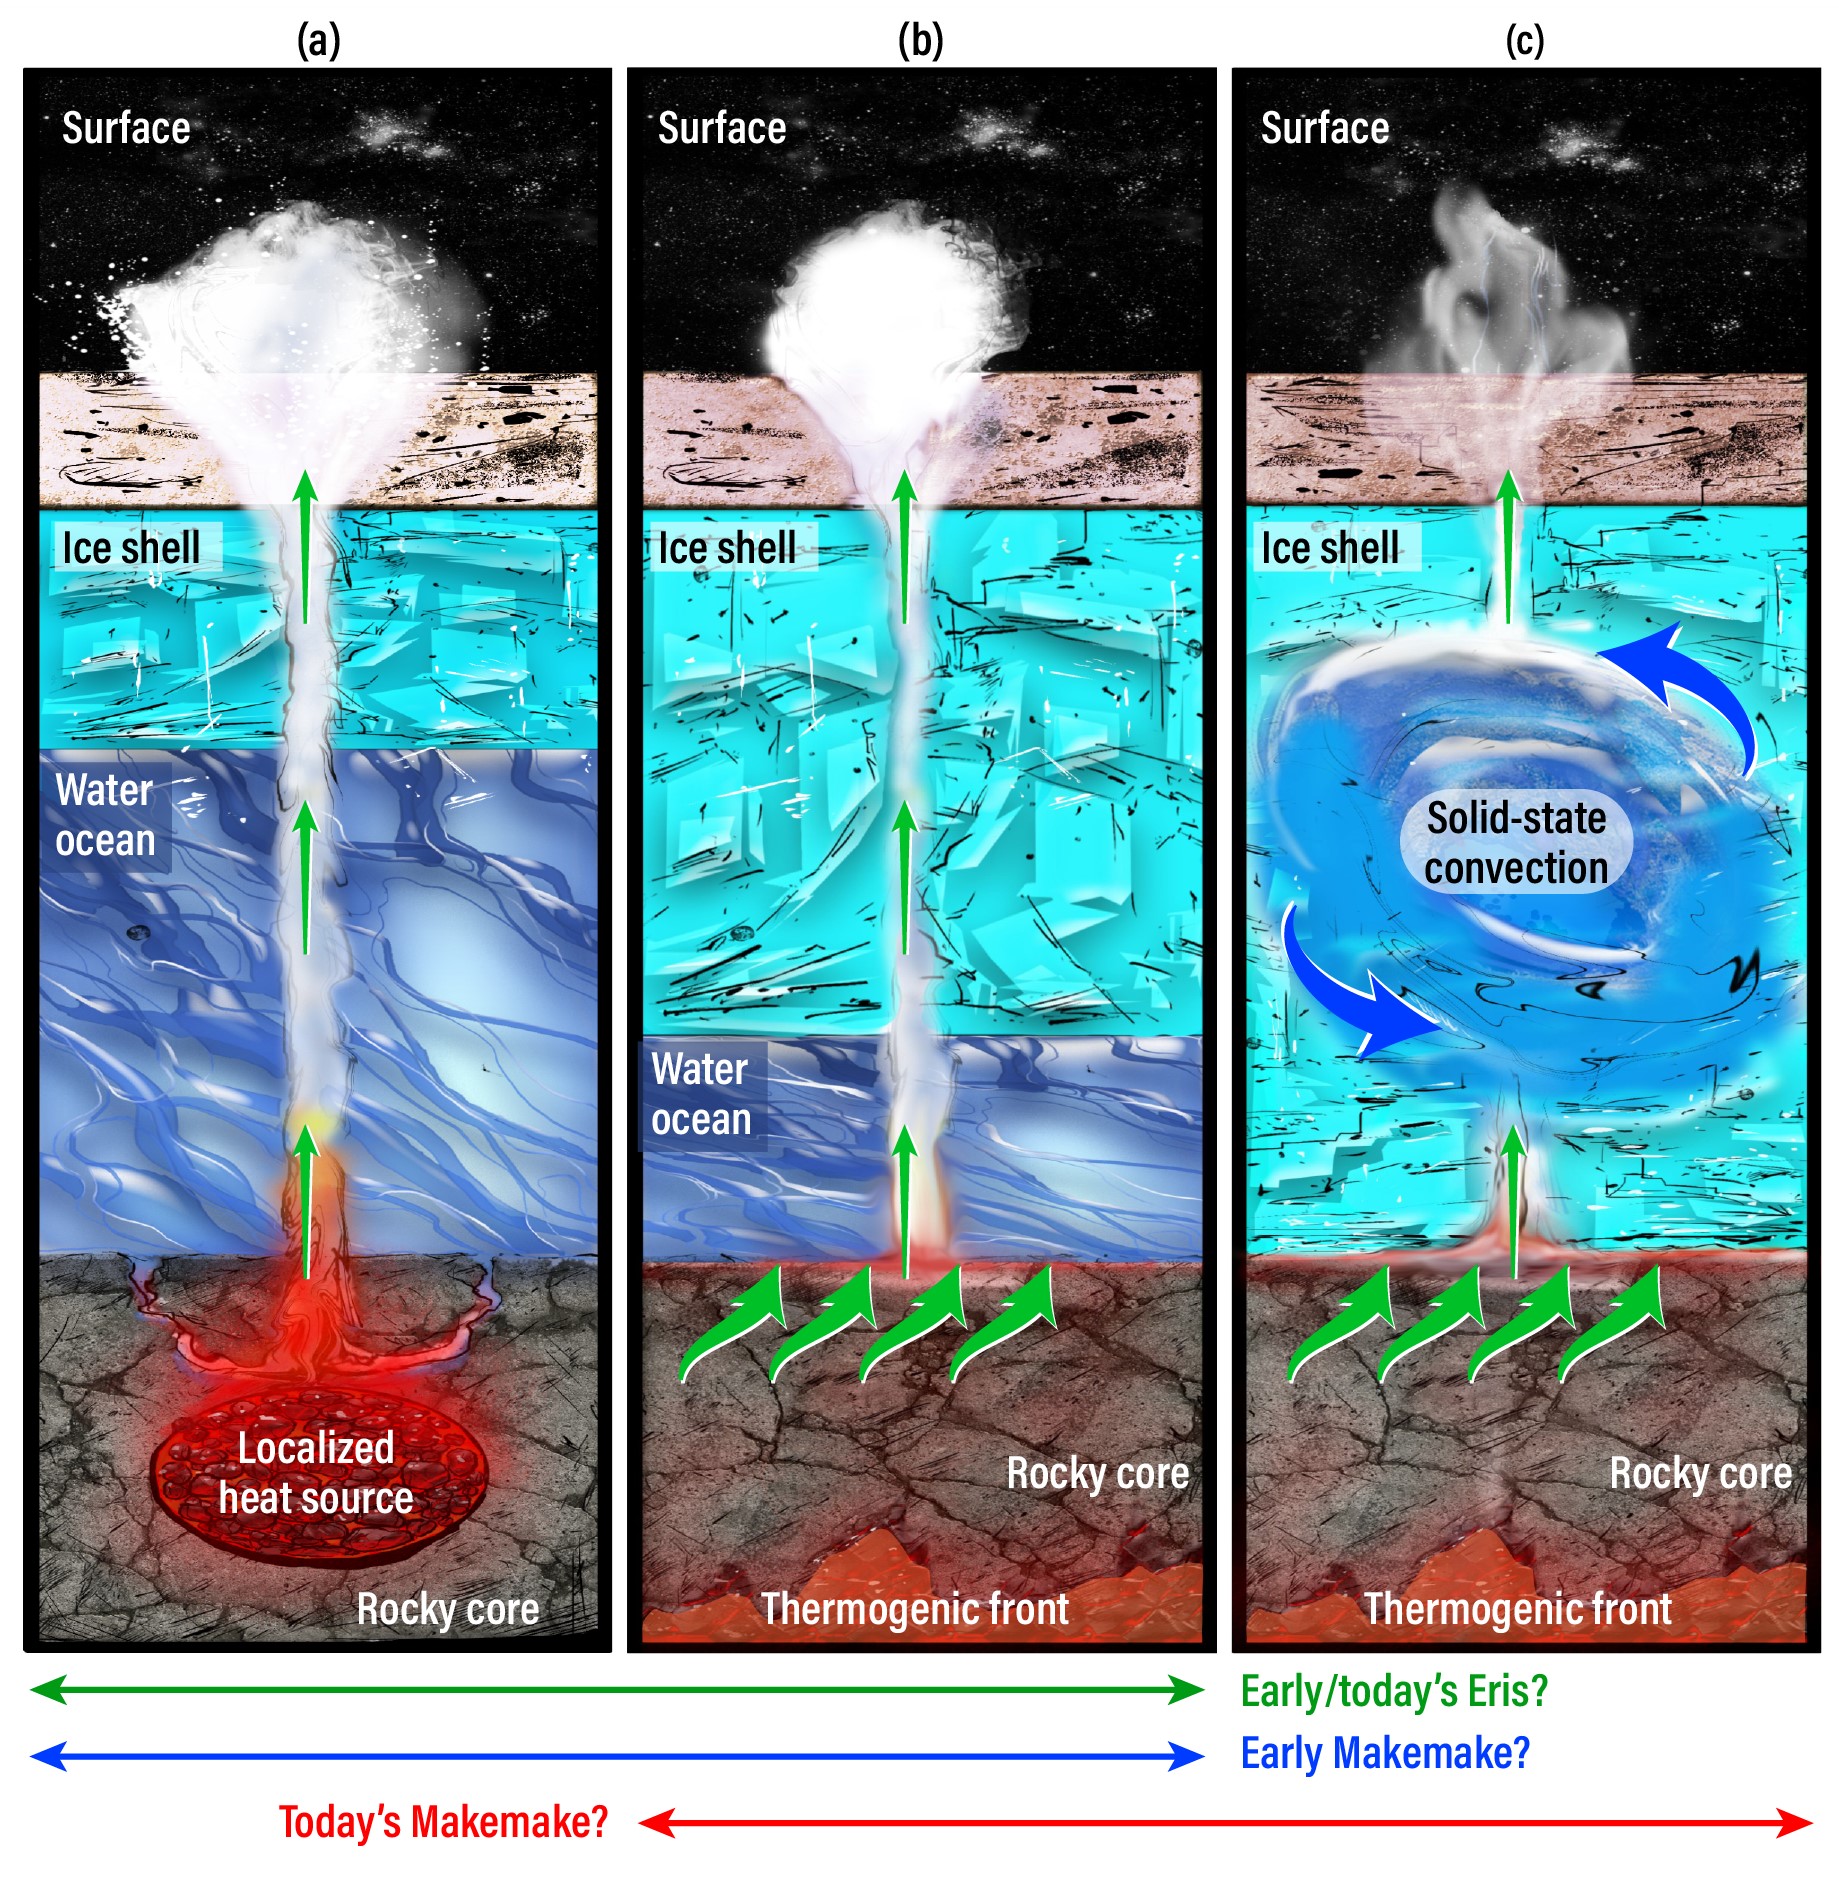 La struttura interna di Eris e Makemake, che presenterebbe un dinamismo geotermico